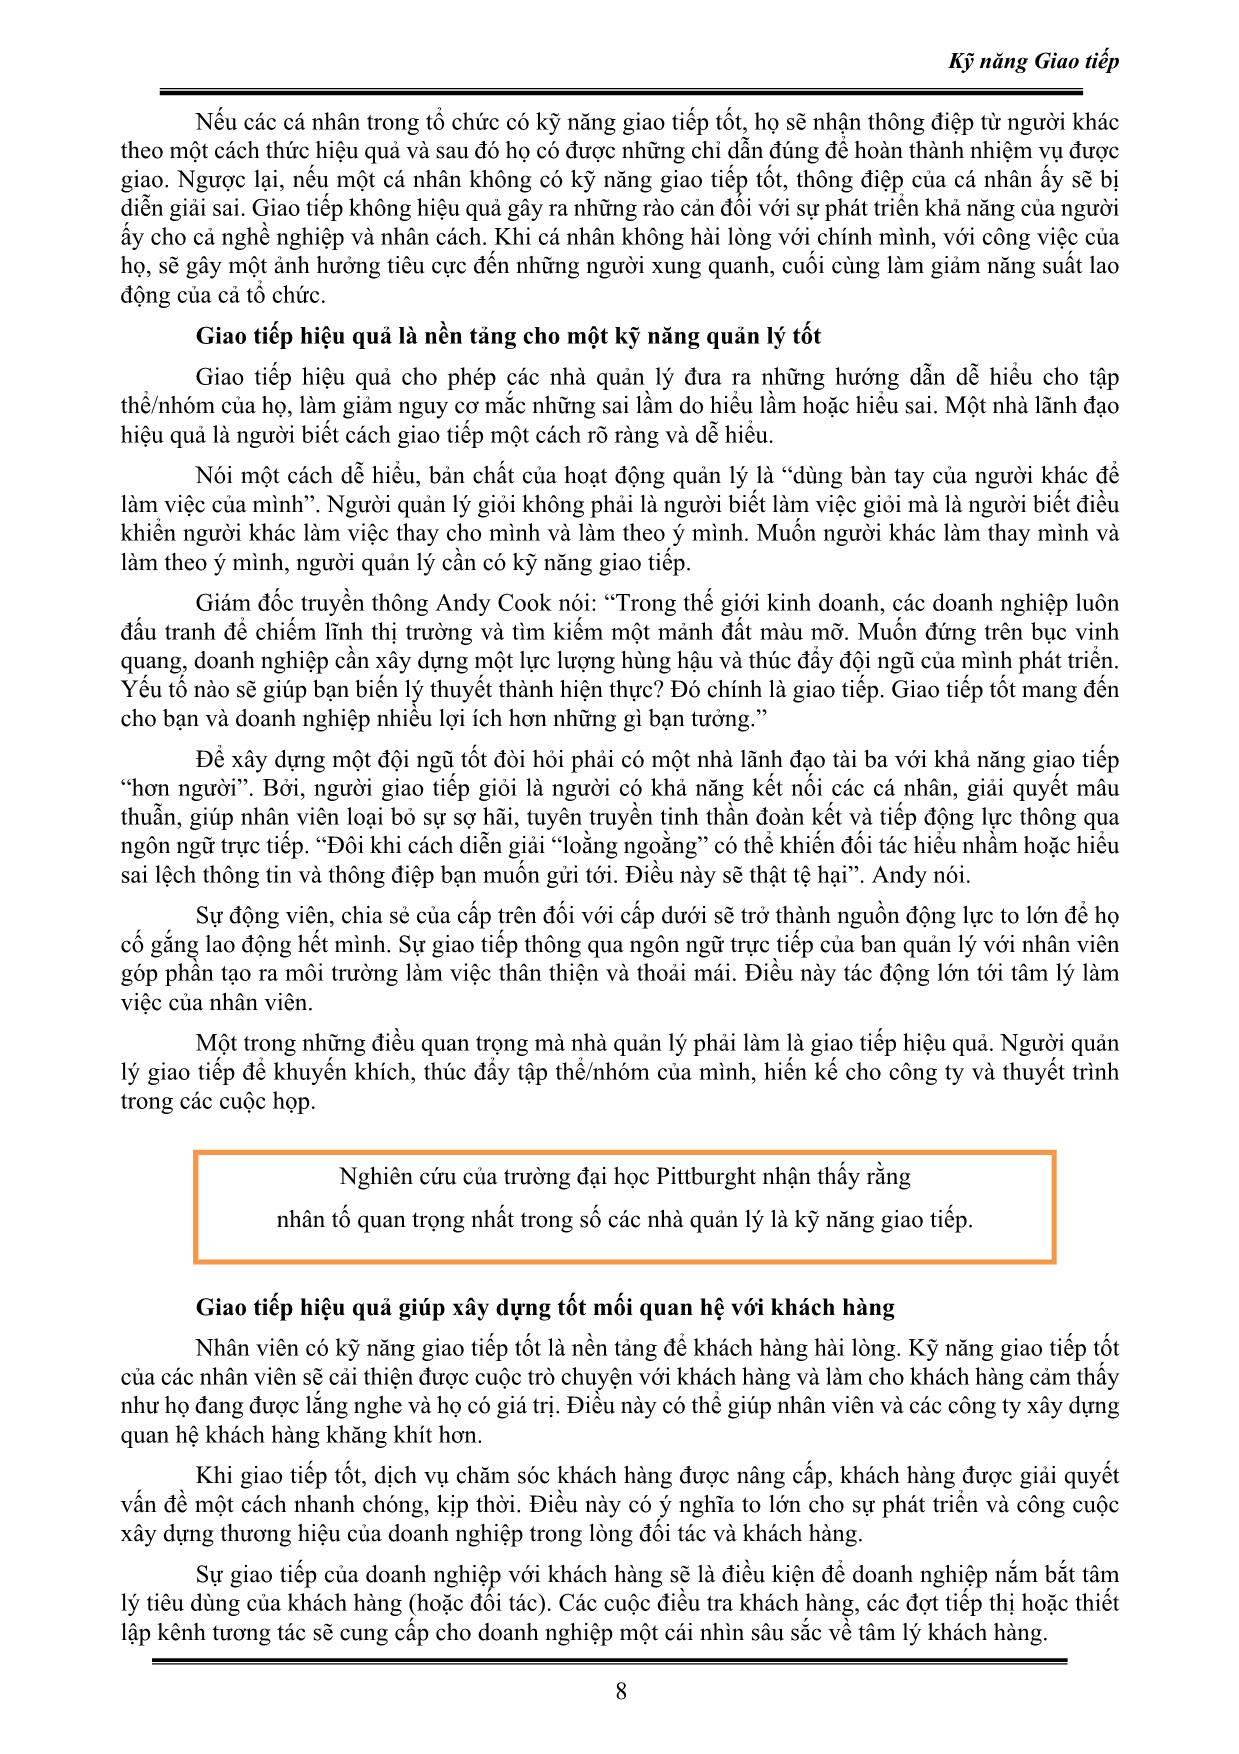 Giáo trình Kỹ năng giao tiếp - Nguyễn Thị Trường Hân trang 9